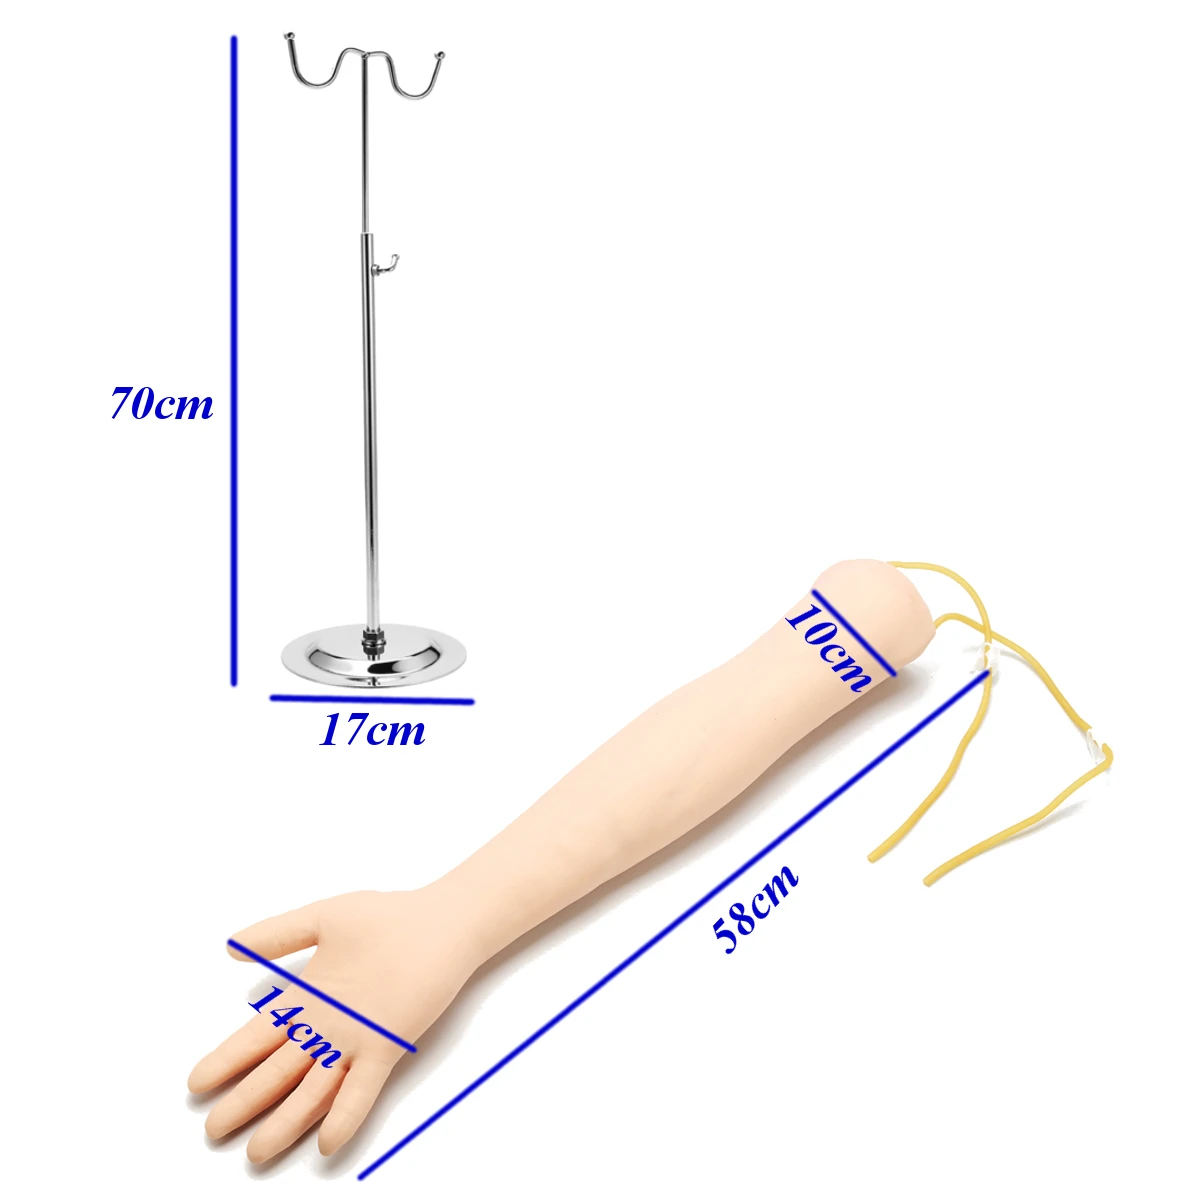 IV практика рука Phlebotomy Venipuncture модель с кронштейном рука взрослого человека Venipuncture обучение школы образовательная медицинская модель новая